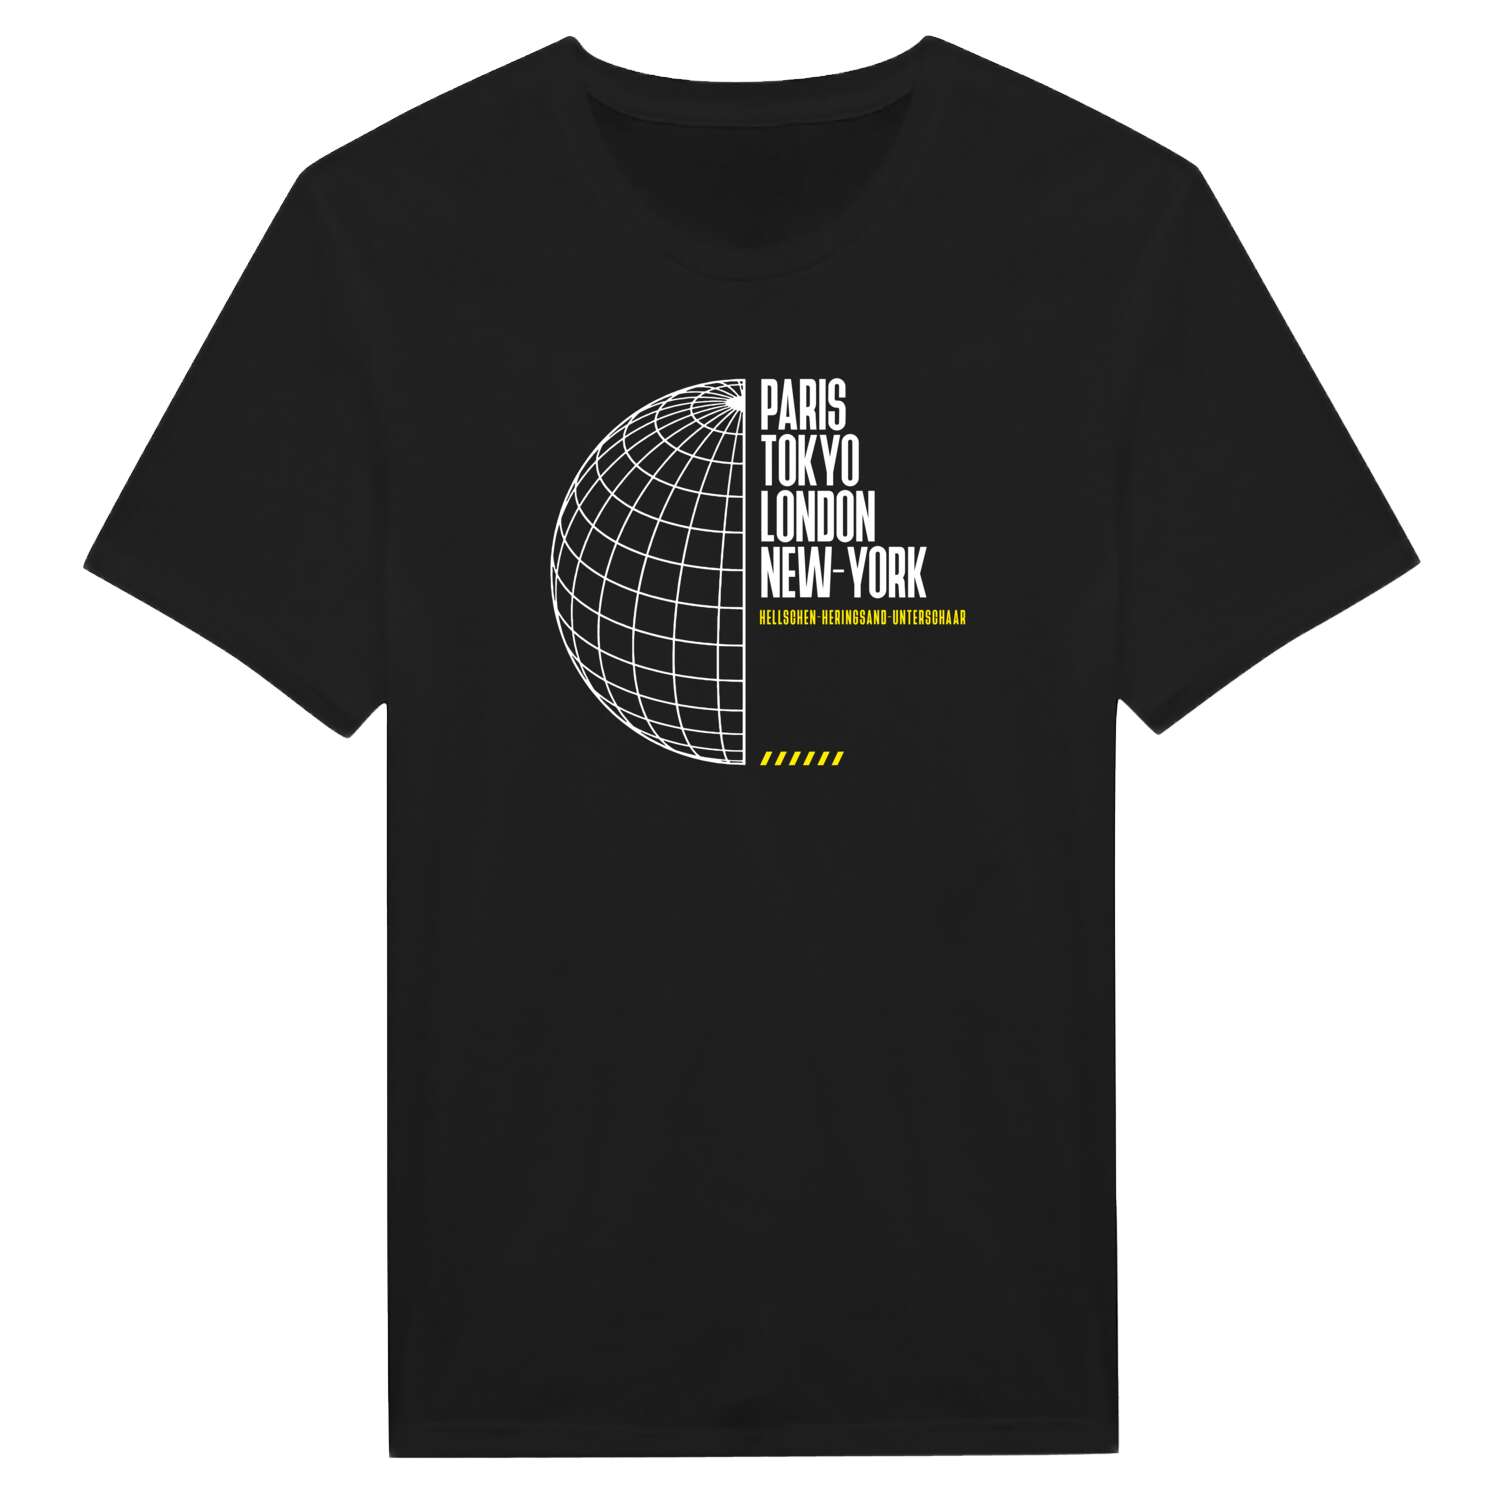 Hellschen-Heringsand-Unterschaar T-Shirt »Paris Tokyo London«